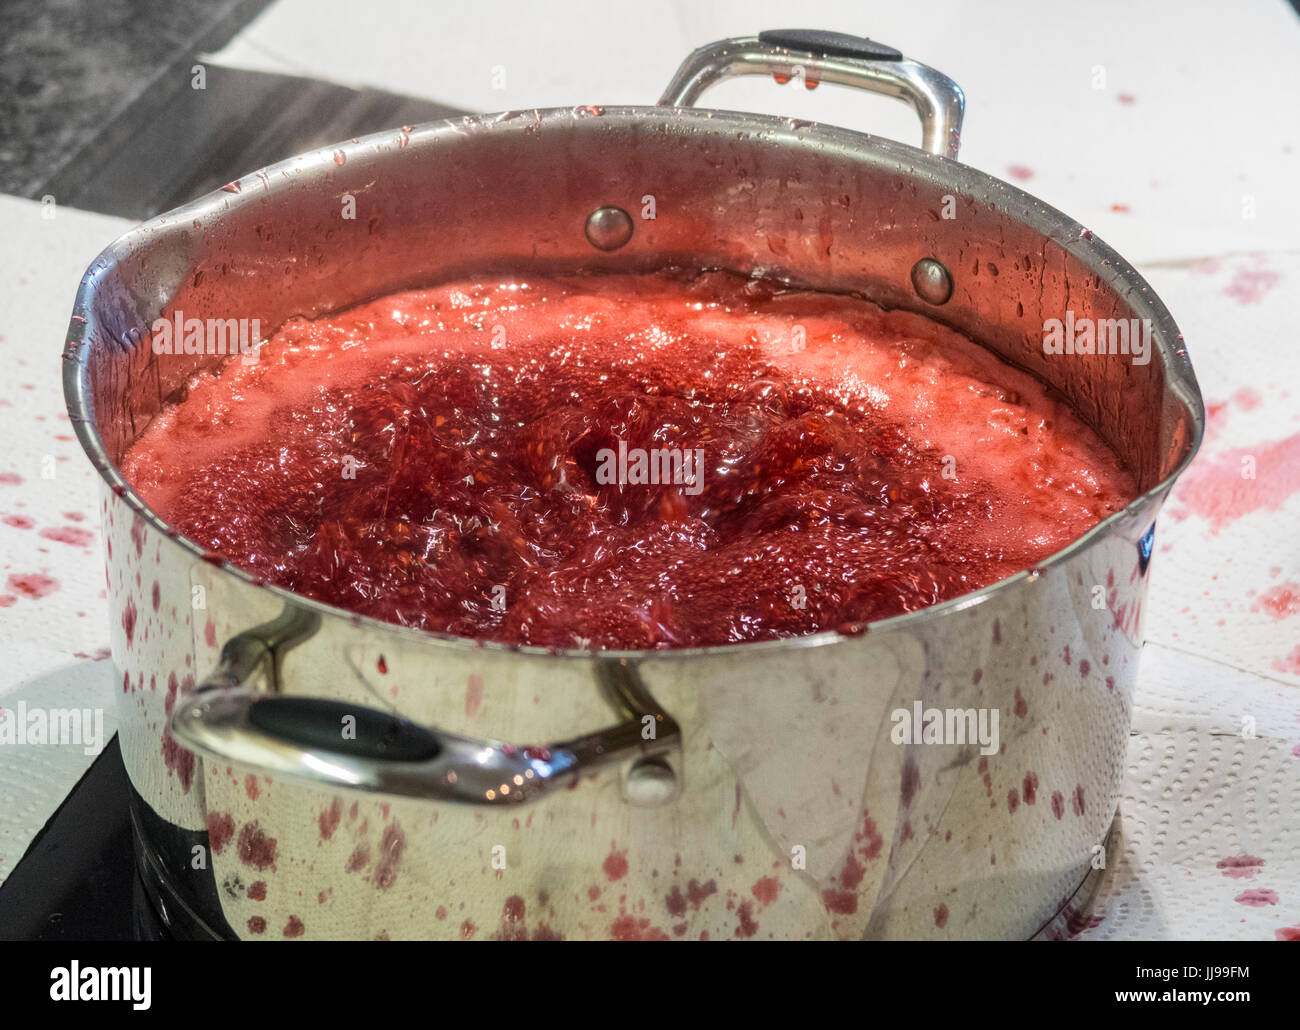 Himbeermarmelade energisch auf einem Induktionskochfeld in einem  metallischen Topf kochen, bedeckt die Umgebung in Papier, um Spritzer zu  vermeiden Stockfotografie - Alamy